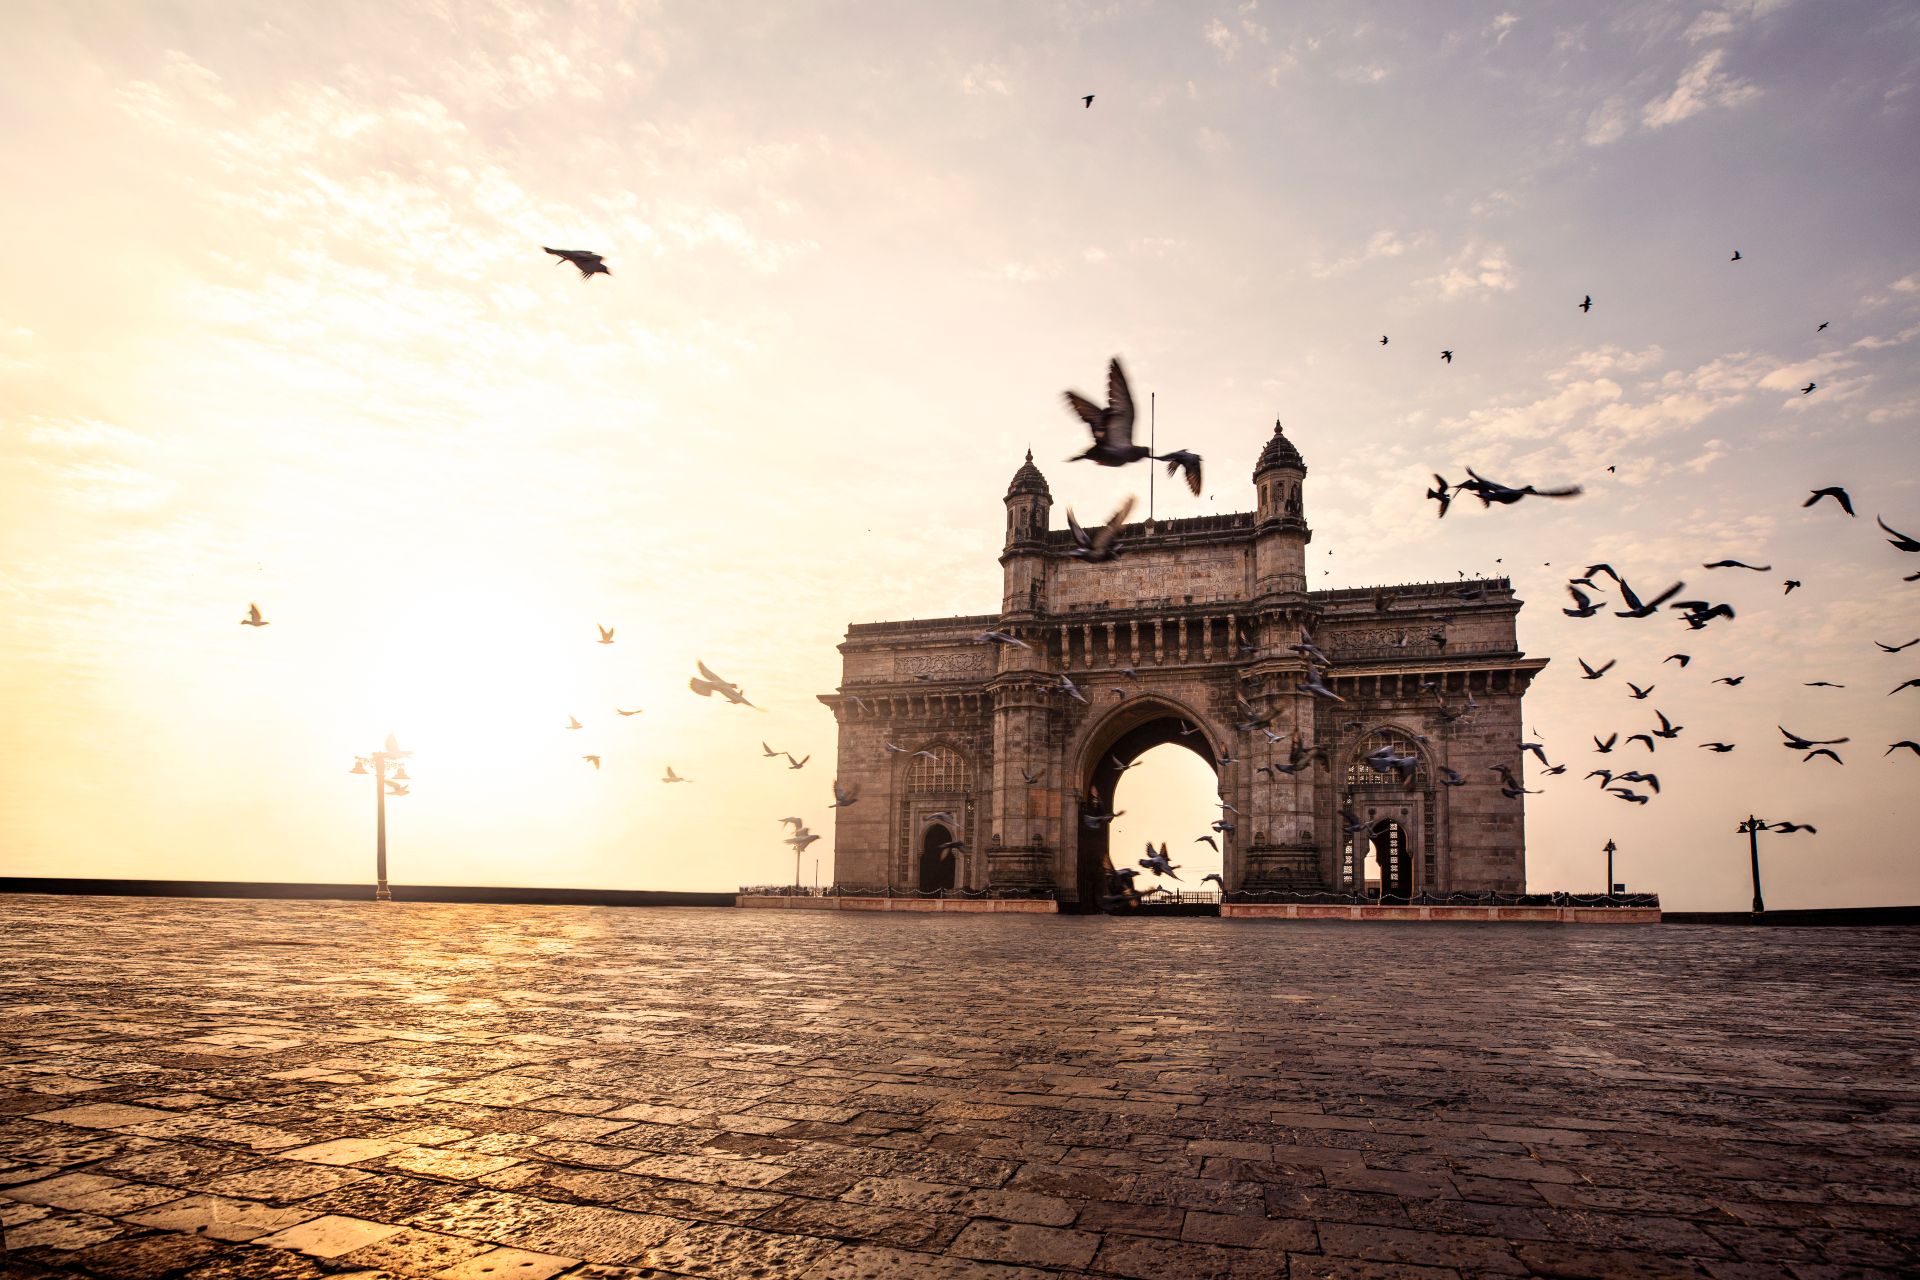 Porte de l'Inde, monument du Maharashtra